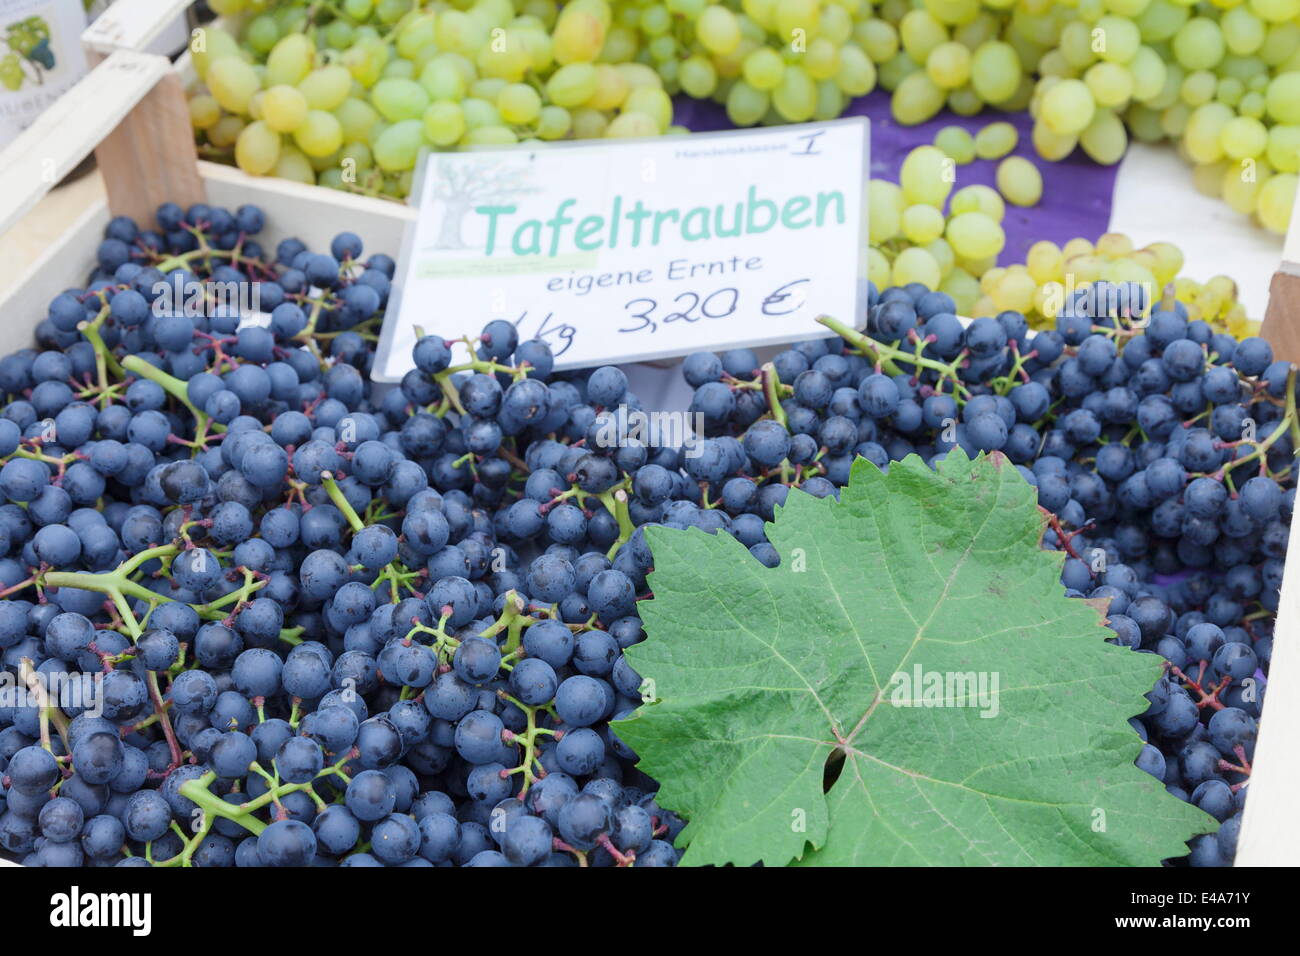 Les raisins pour le vin blanc et bleu at a market stall, marché hebdomadaire, marché, Esslingen, Baden Wurtemberg, Allemagne, Europe Banque D'Images